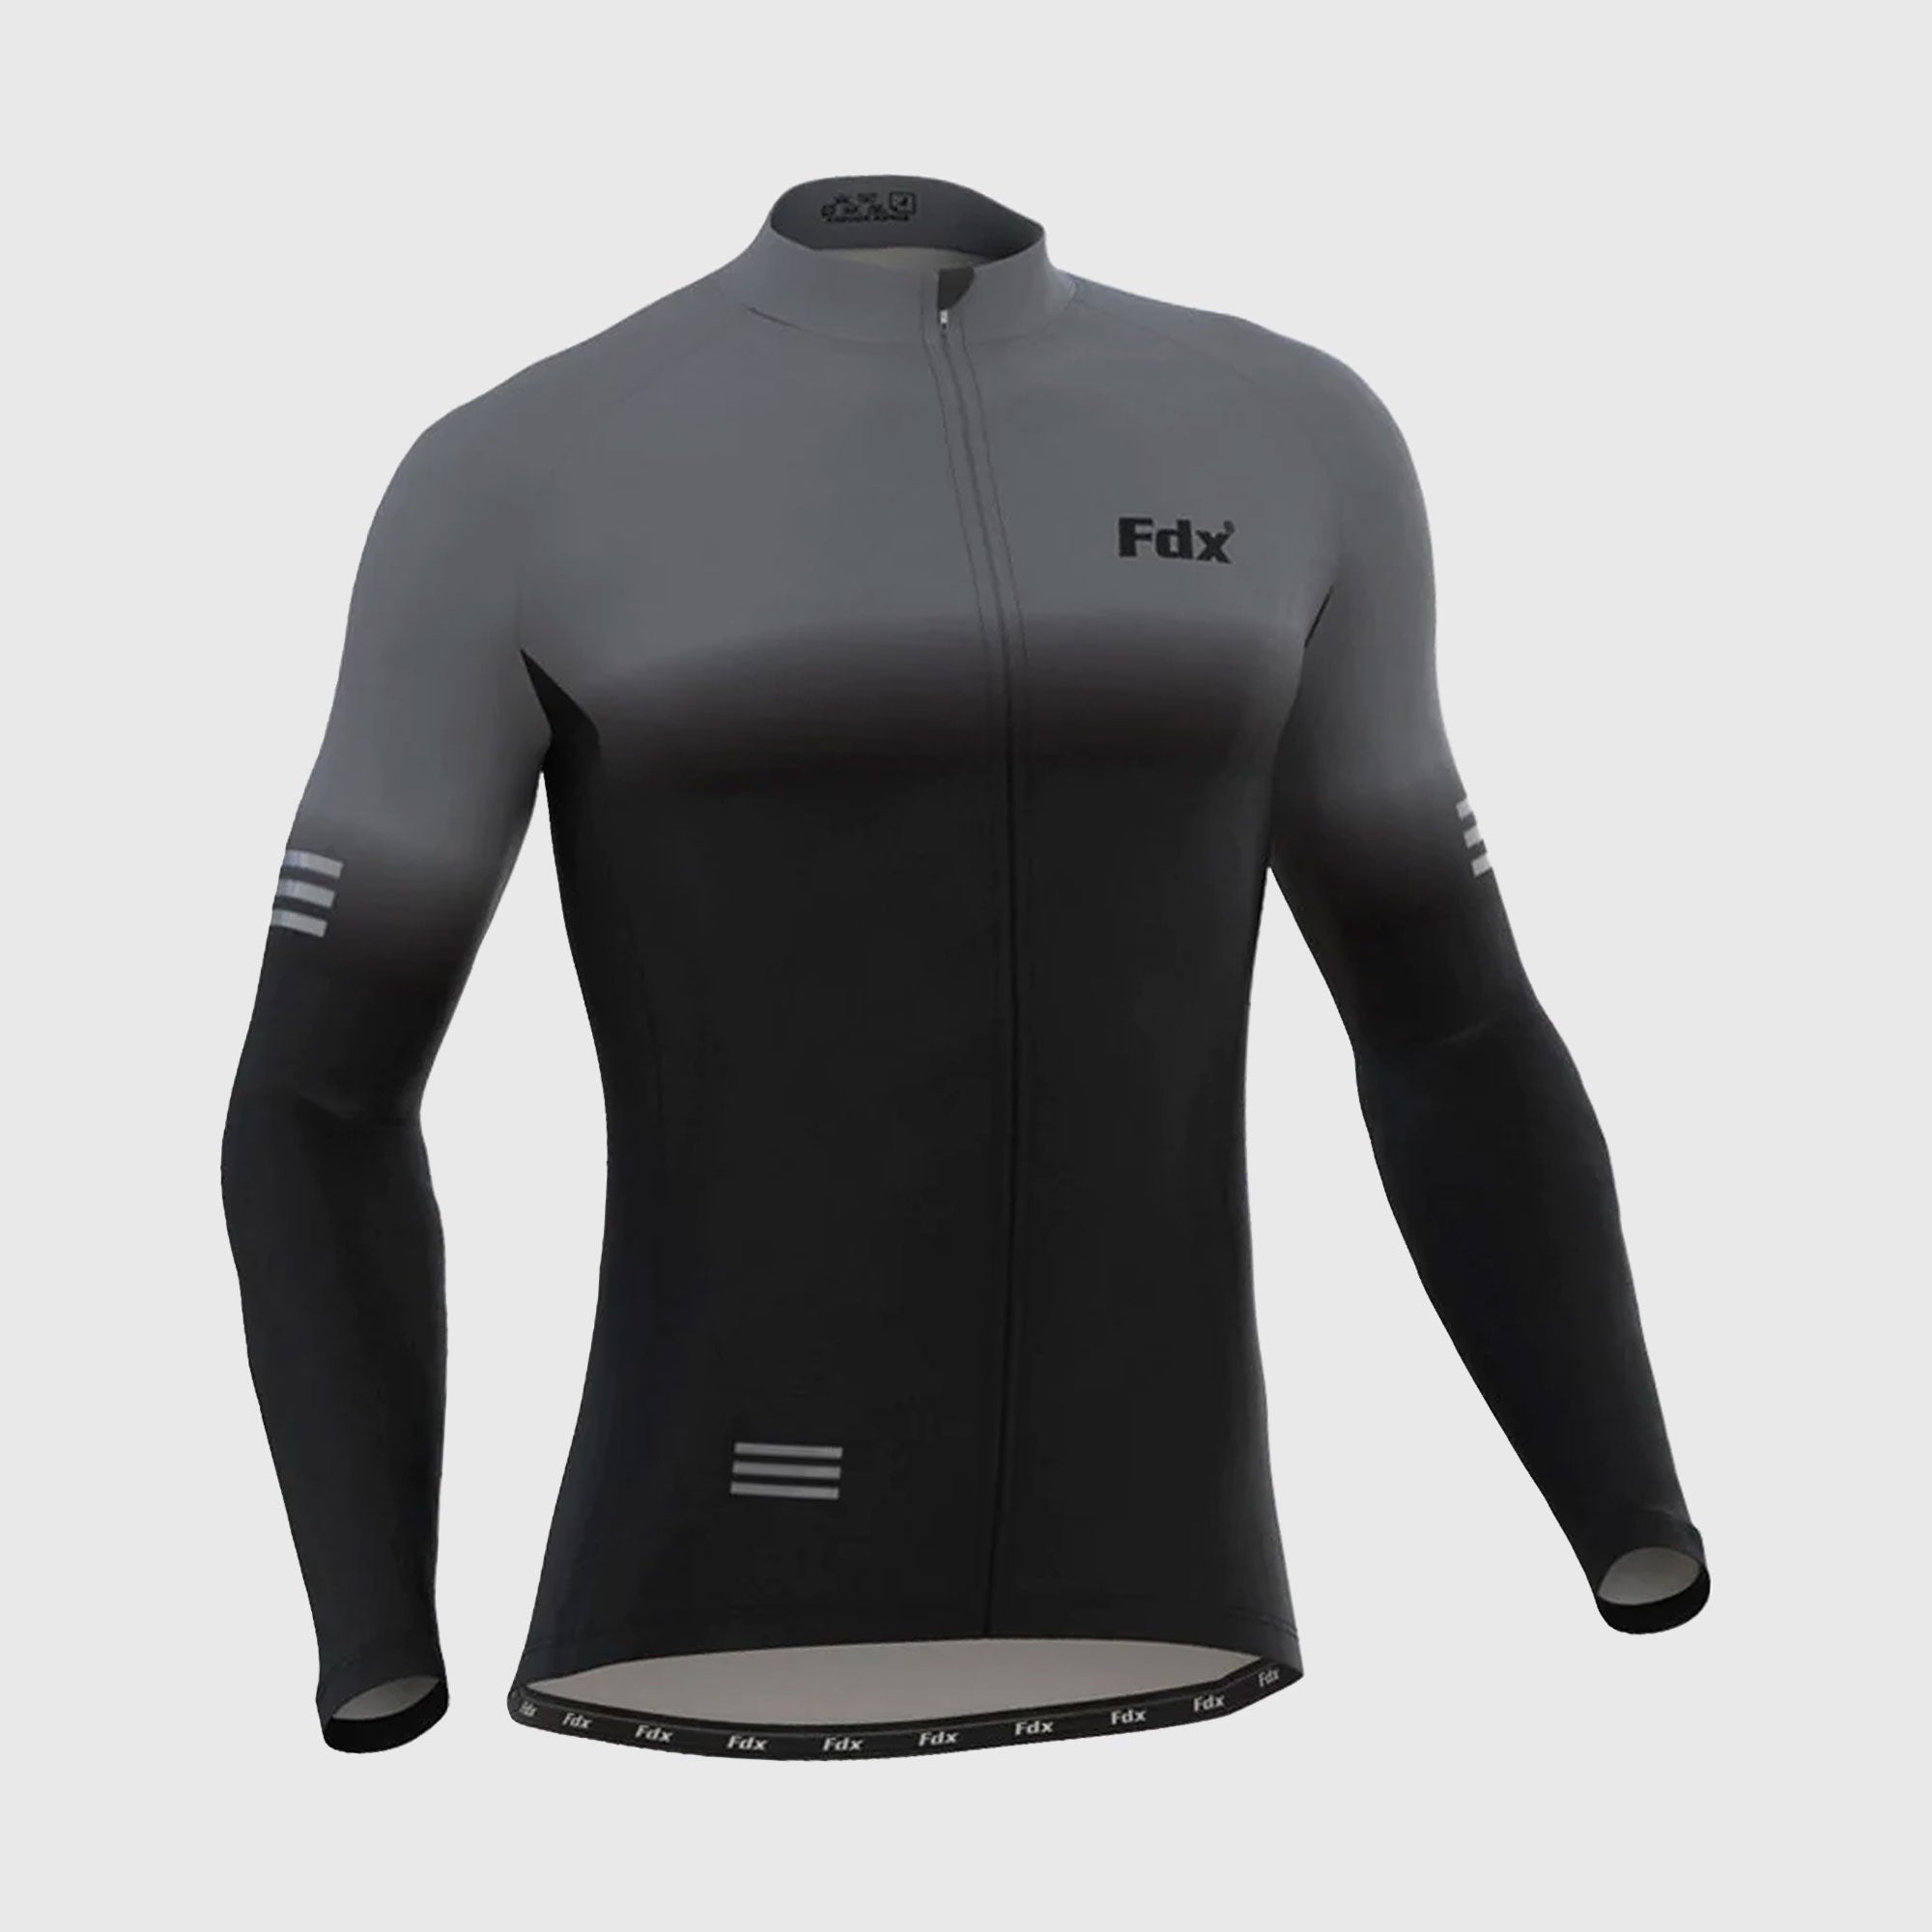 Fdx Men's Black & Grey Best Long Sleeve Cycling Jersey for Winter Roubaix Thermal Fleece Road Bike Wear Top Full Zipper, Pockets & Hi viz Reflectors - Duo